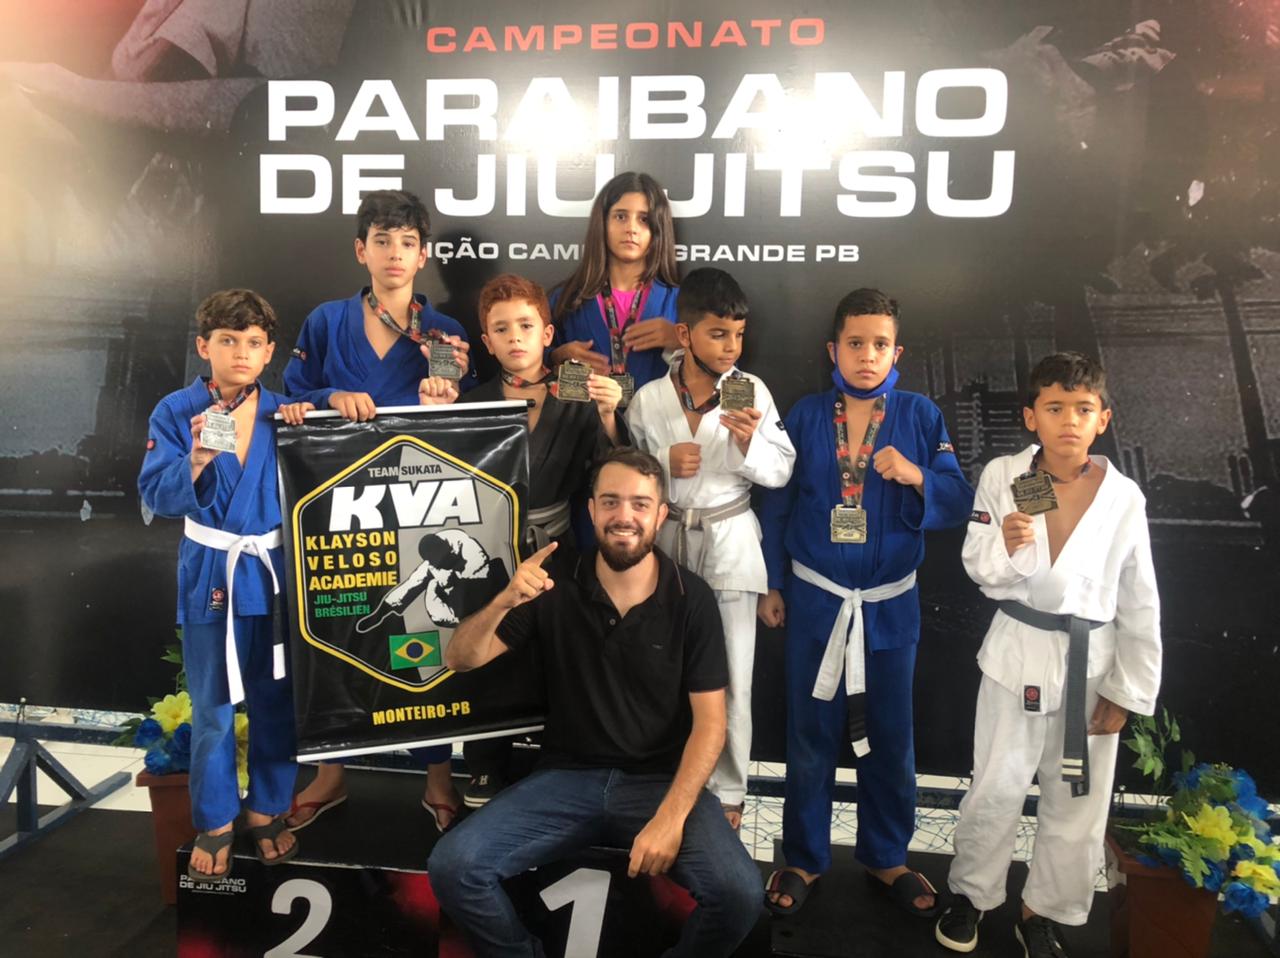 Secretaria de Esportes de Monteiro apóia equipe de Jiu-jitsu e parabeniza atletas por resultados positivos em campeonato paraibano.